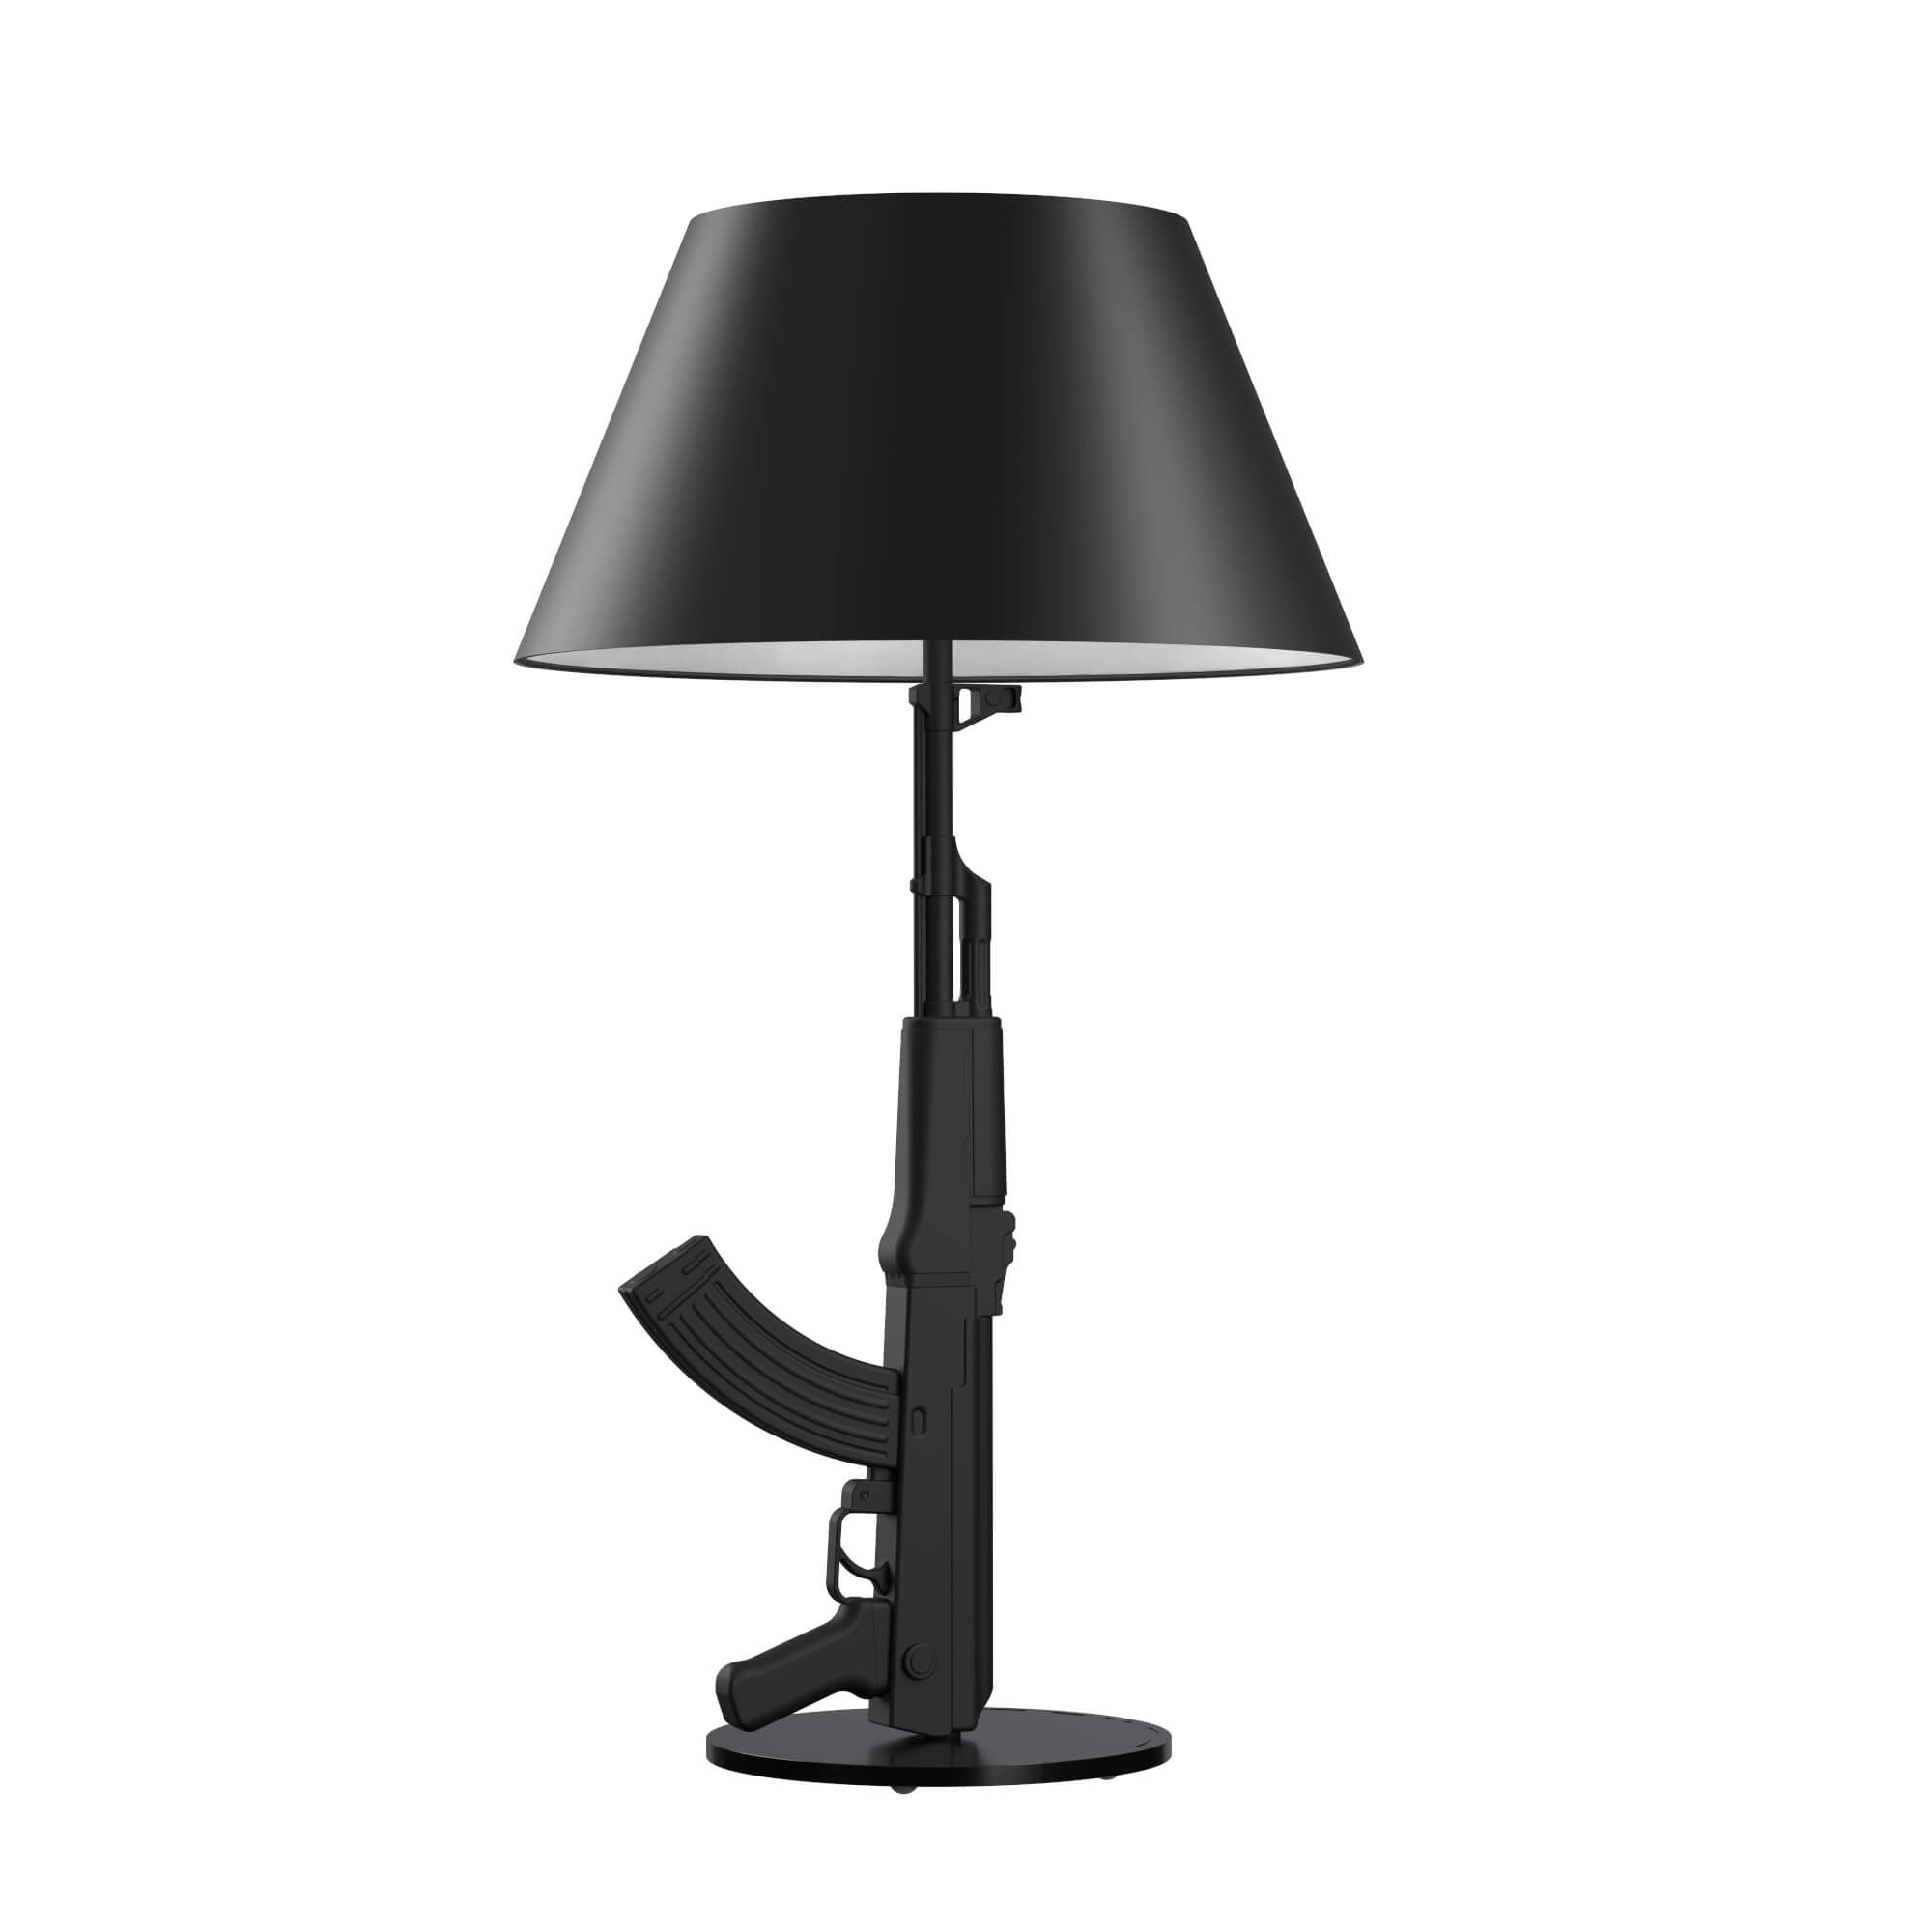 GUN LAMP (FLOS) - 